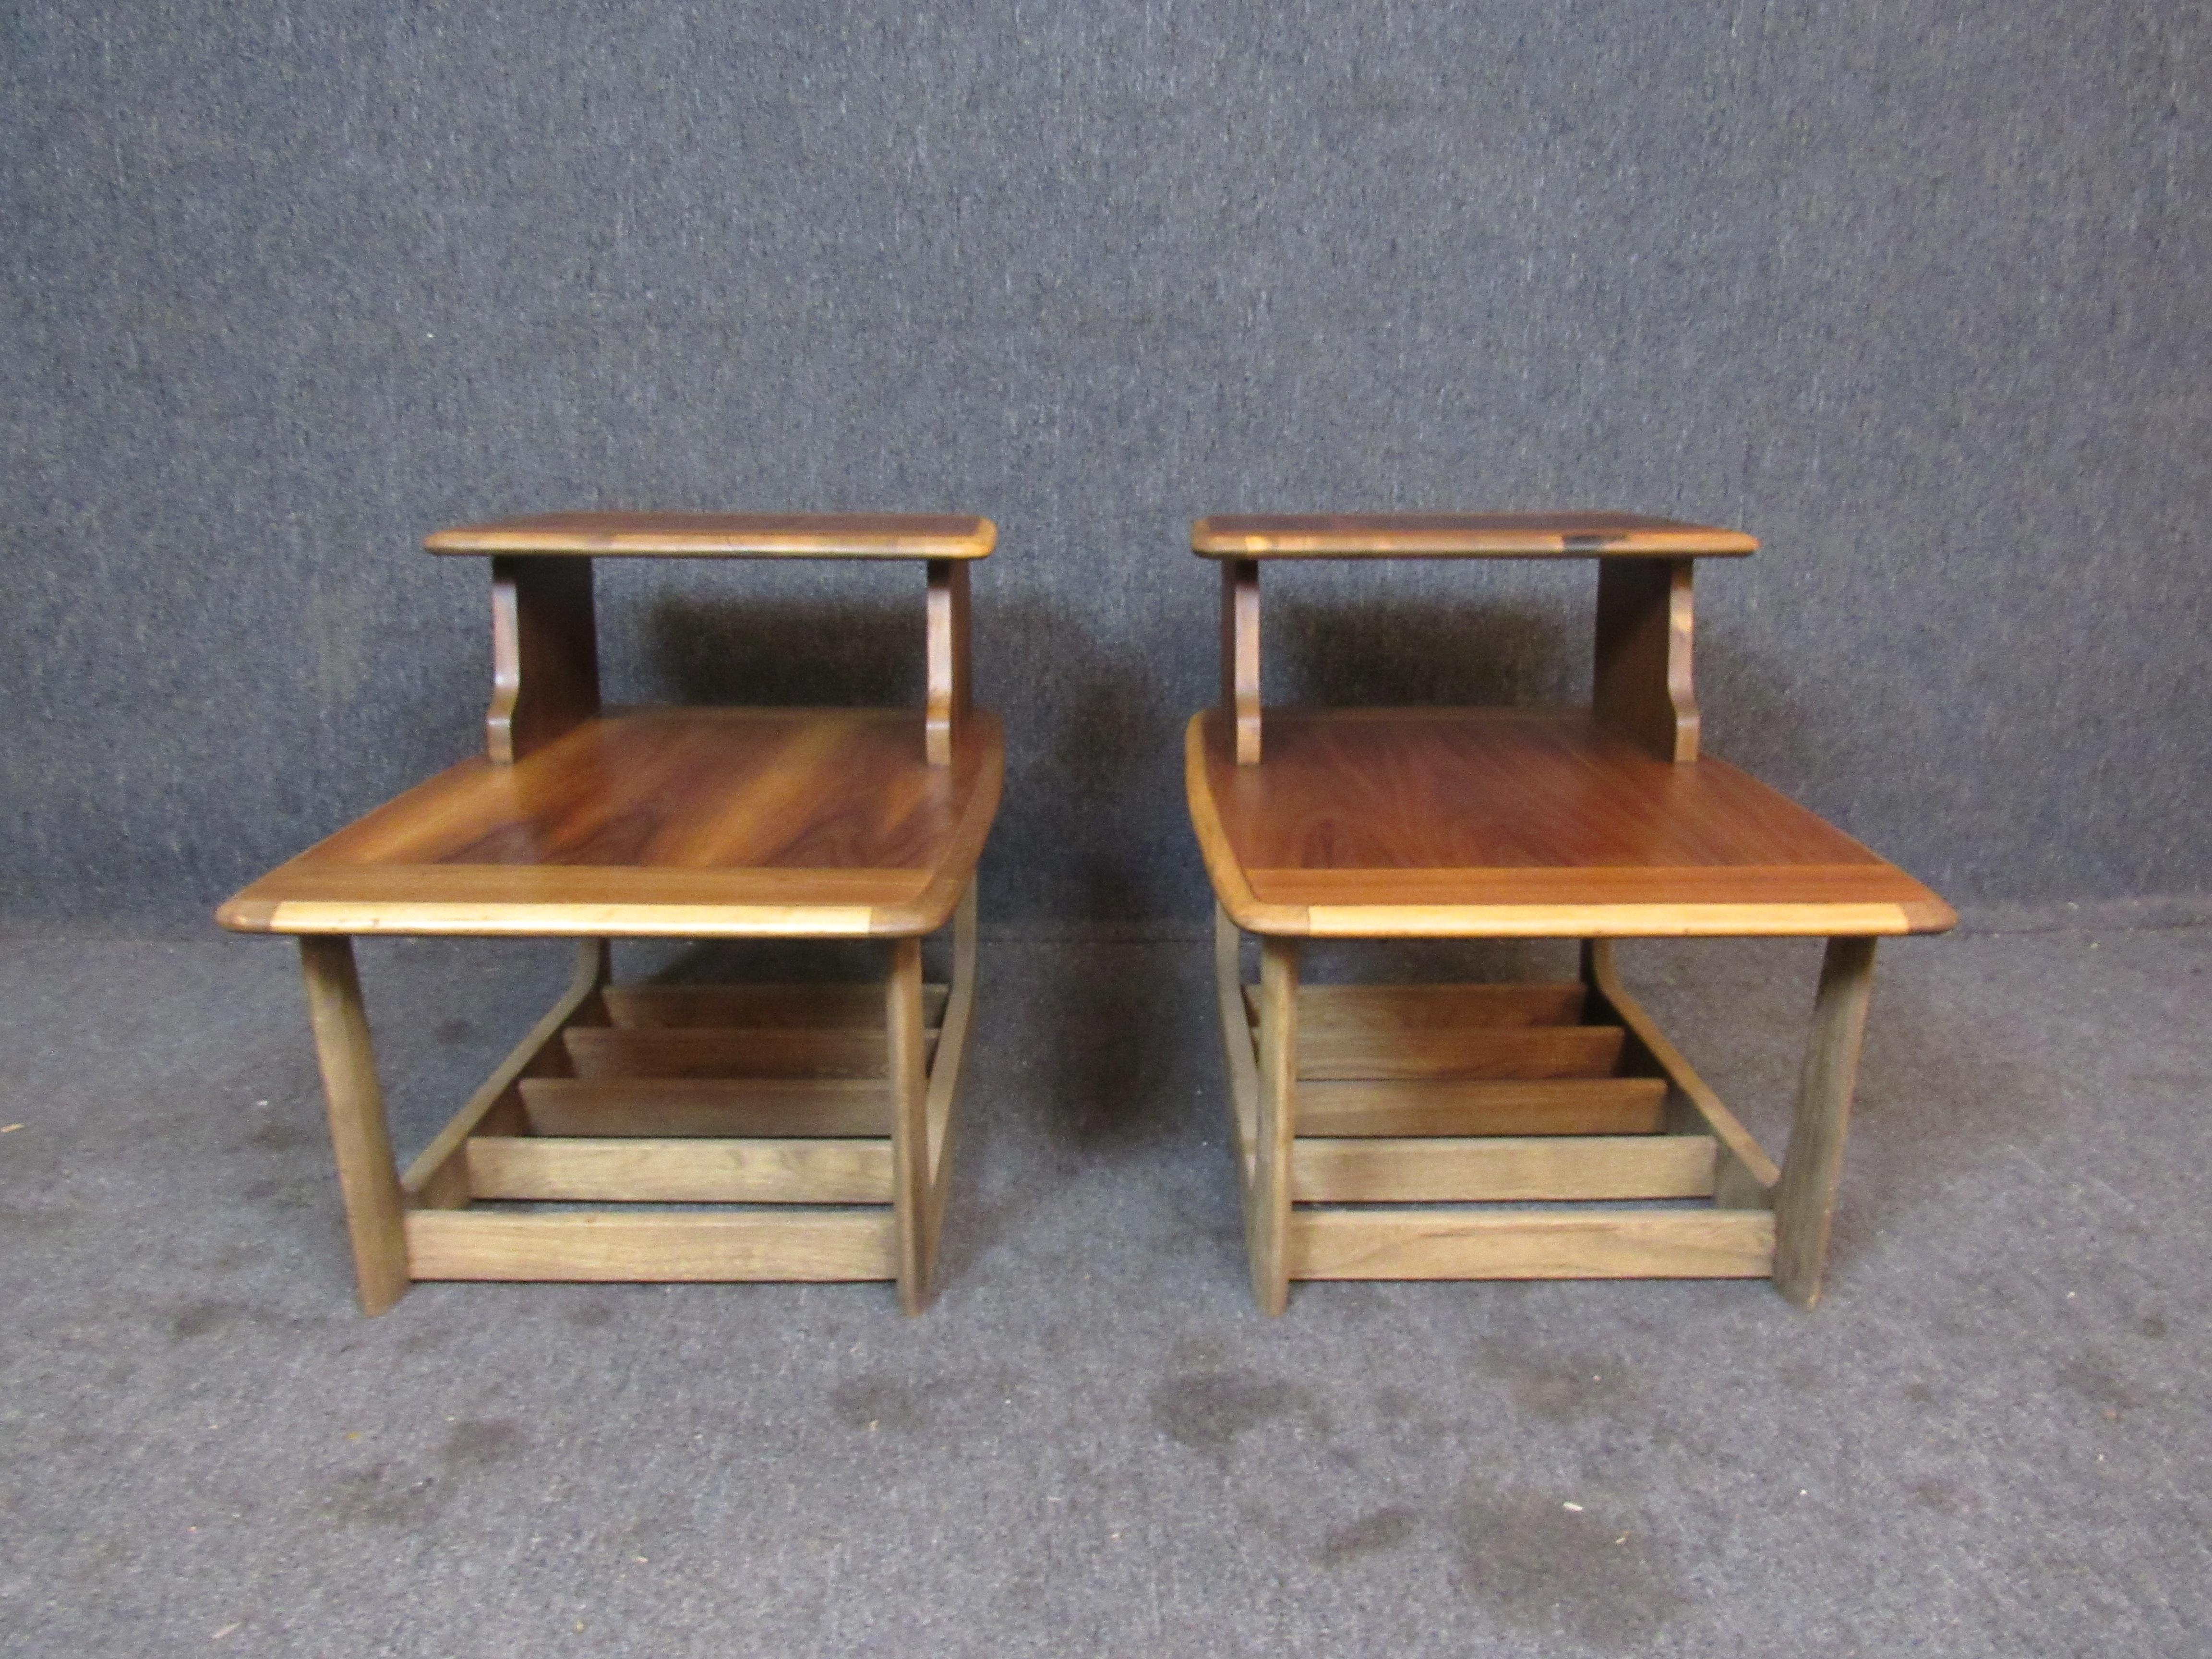 Fantastique paire de tables d'appoint vintage fabriquées par les artisans de renommée mondiale de Bassett Furniture, en Virginie. Ces tables offrent autant de beauté que de fonctionnalité. Elles sont dotées d'un riche grain de bois, de bords